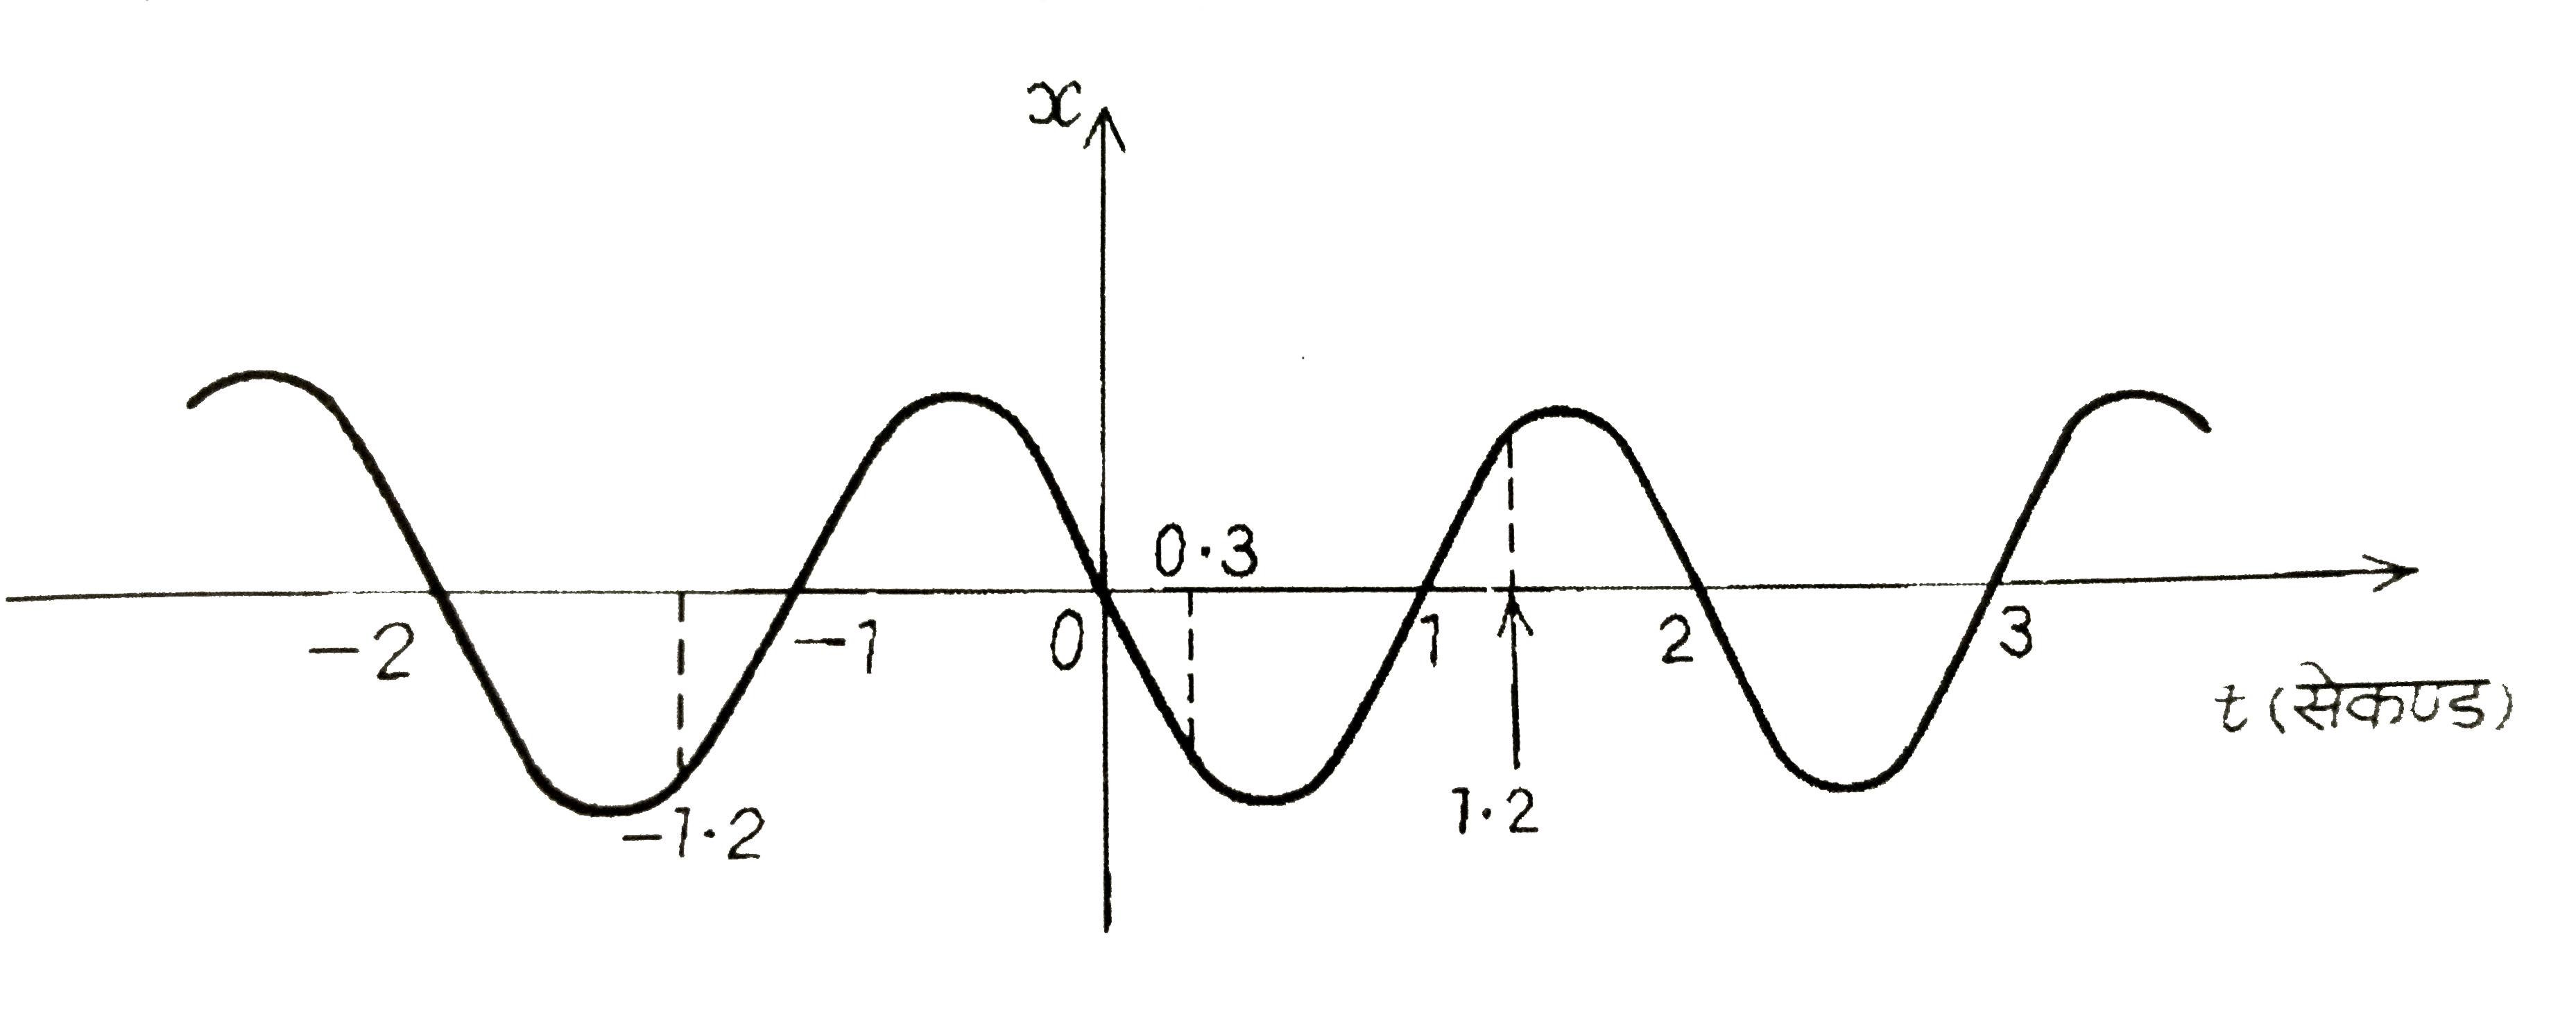 चित्र में किसी कण की एकविमीय सरल आवर्त गति के लिए ग्राफ दिखाया गया है । (इस गति के बारे में आप अध्याय 14 में पढ़ेंगे)  समय t = 0.3s, 1.2s, -1.2s पर कण के स्थिति, वेग व त्वरण के चिन्ह क्या होंगे ?